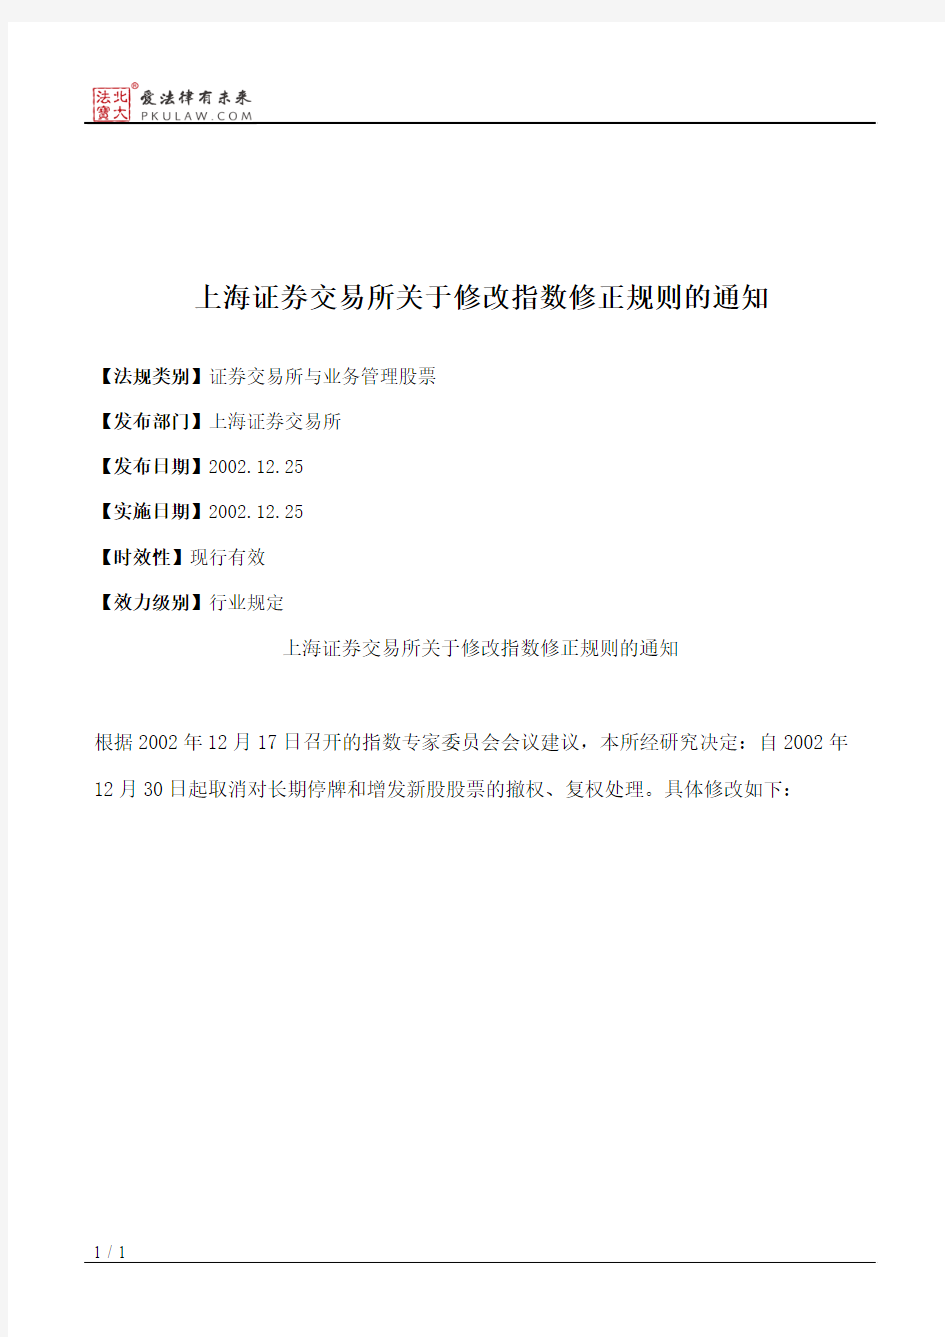 上海证券交易所关于修改指数修正规则的通知